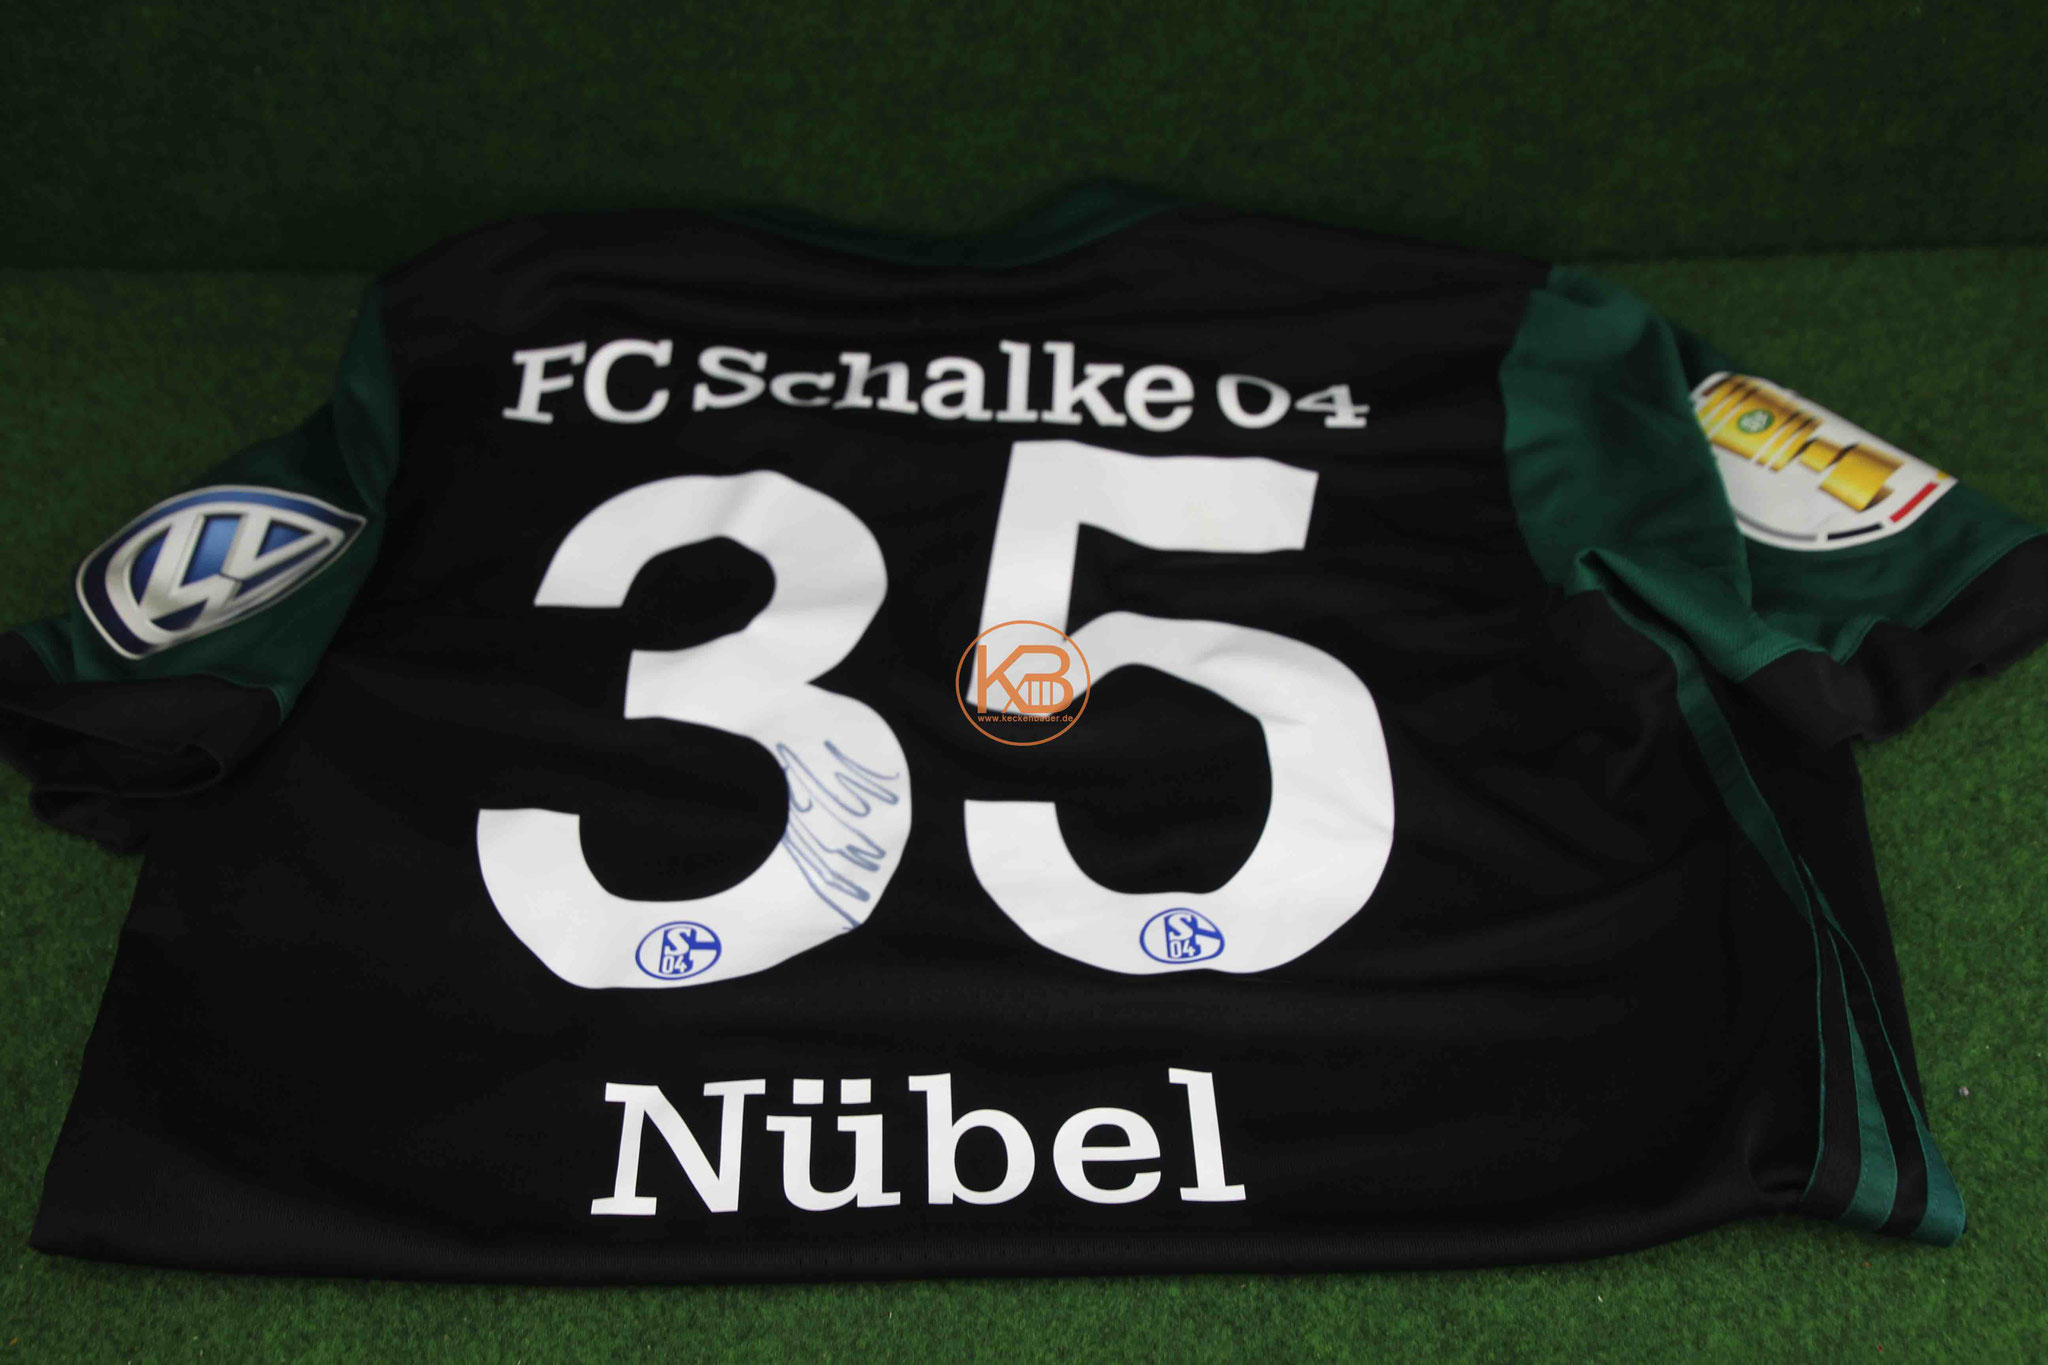 Ein original Matchprepared DFB Pokal Trikot von Schalke 04 inkl. Autogramm von Alexander Nübel 2/2